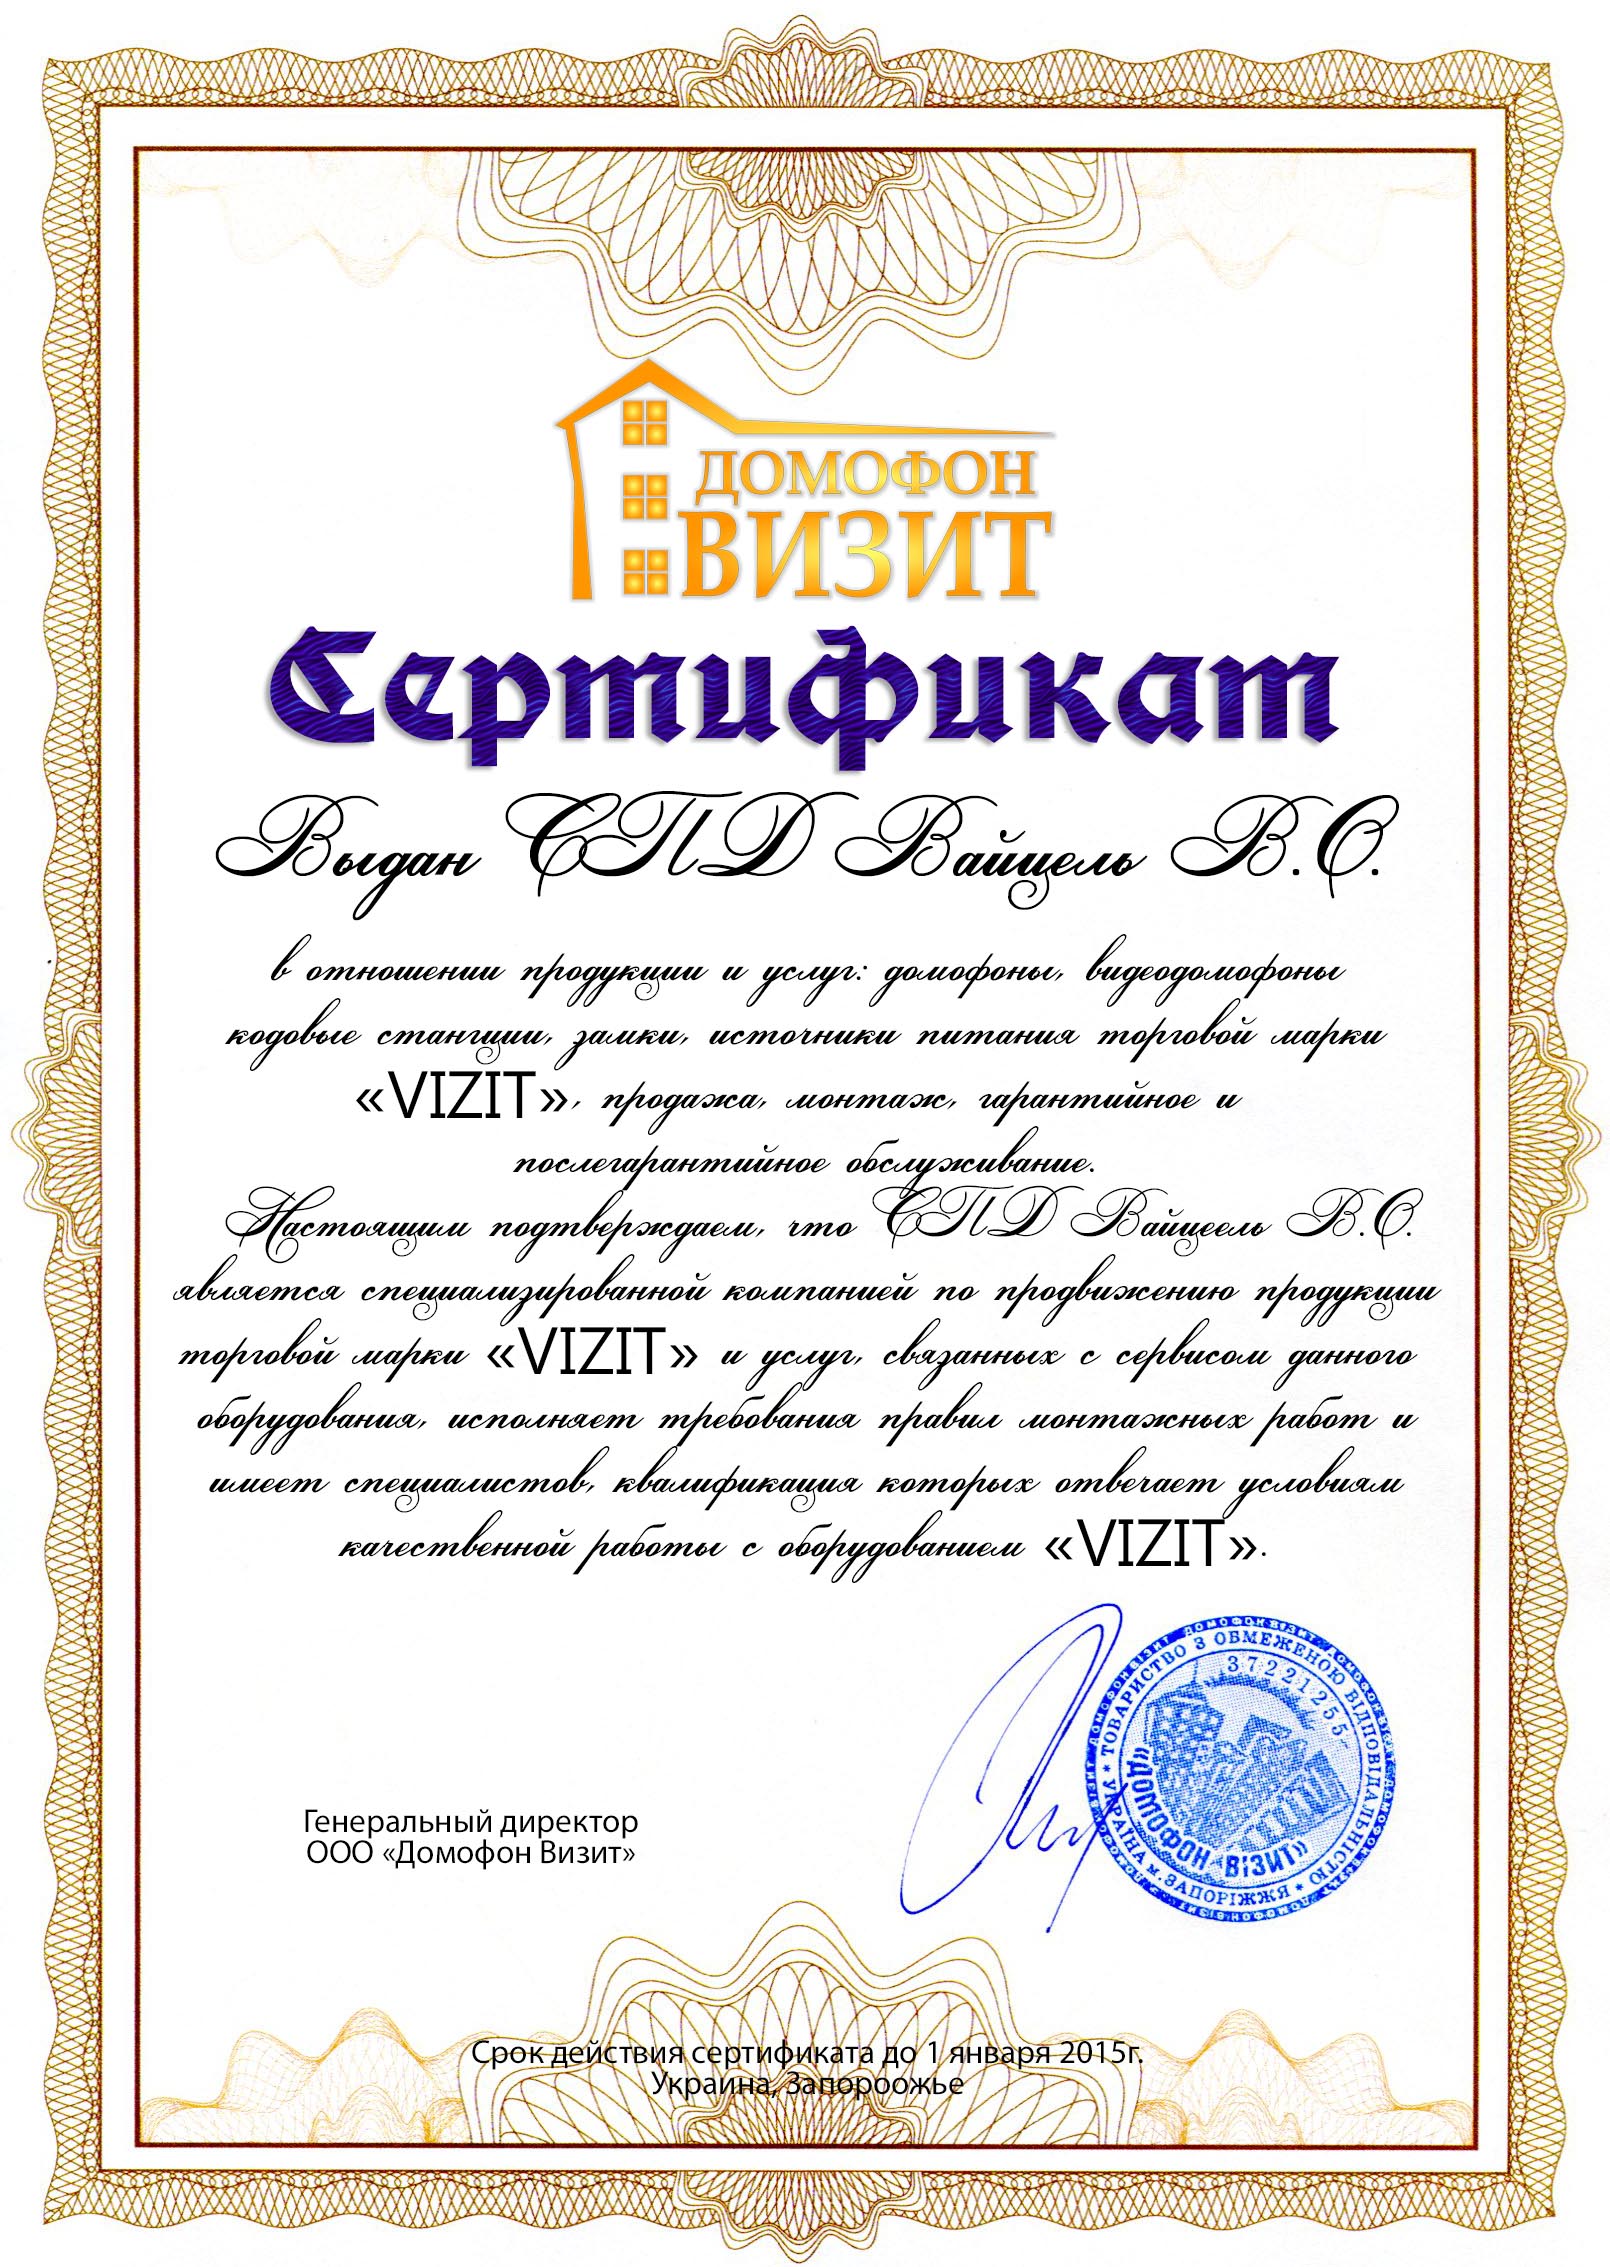 Сертификат на 2013